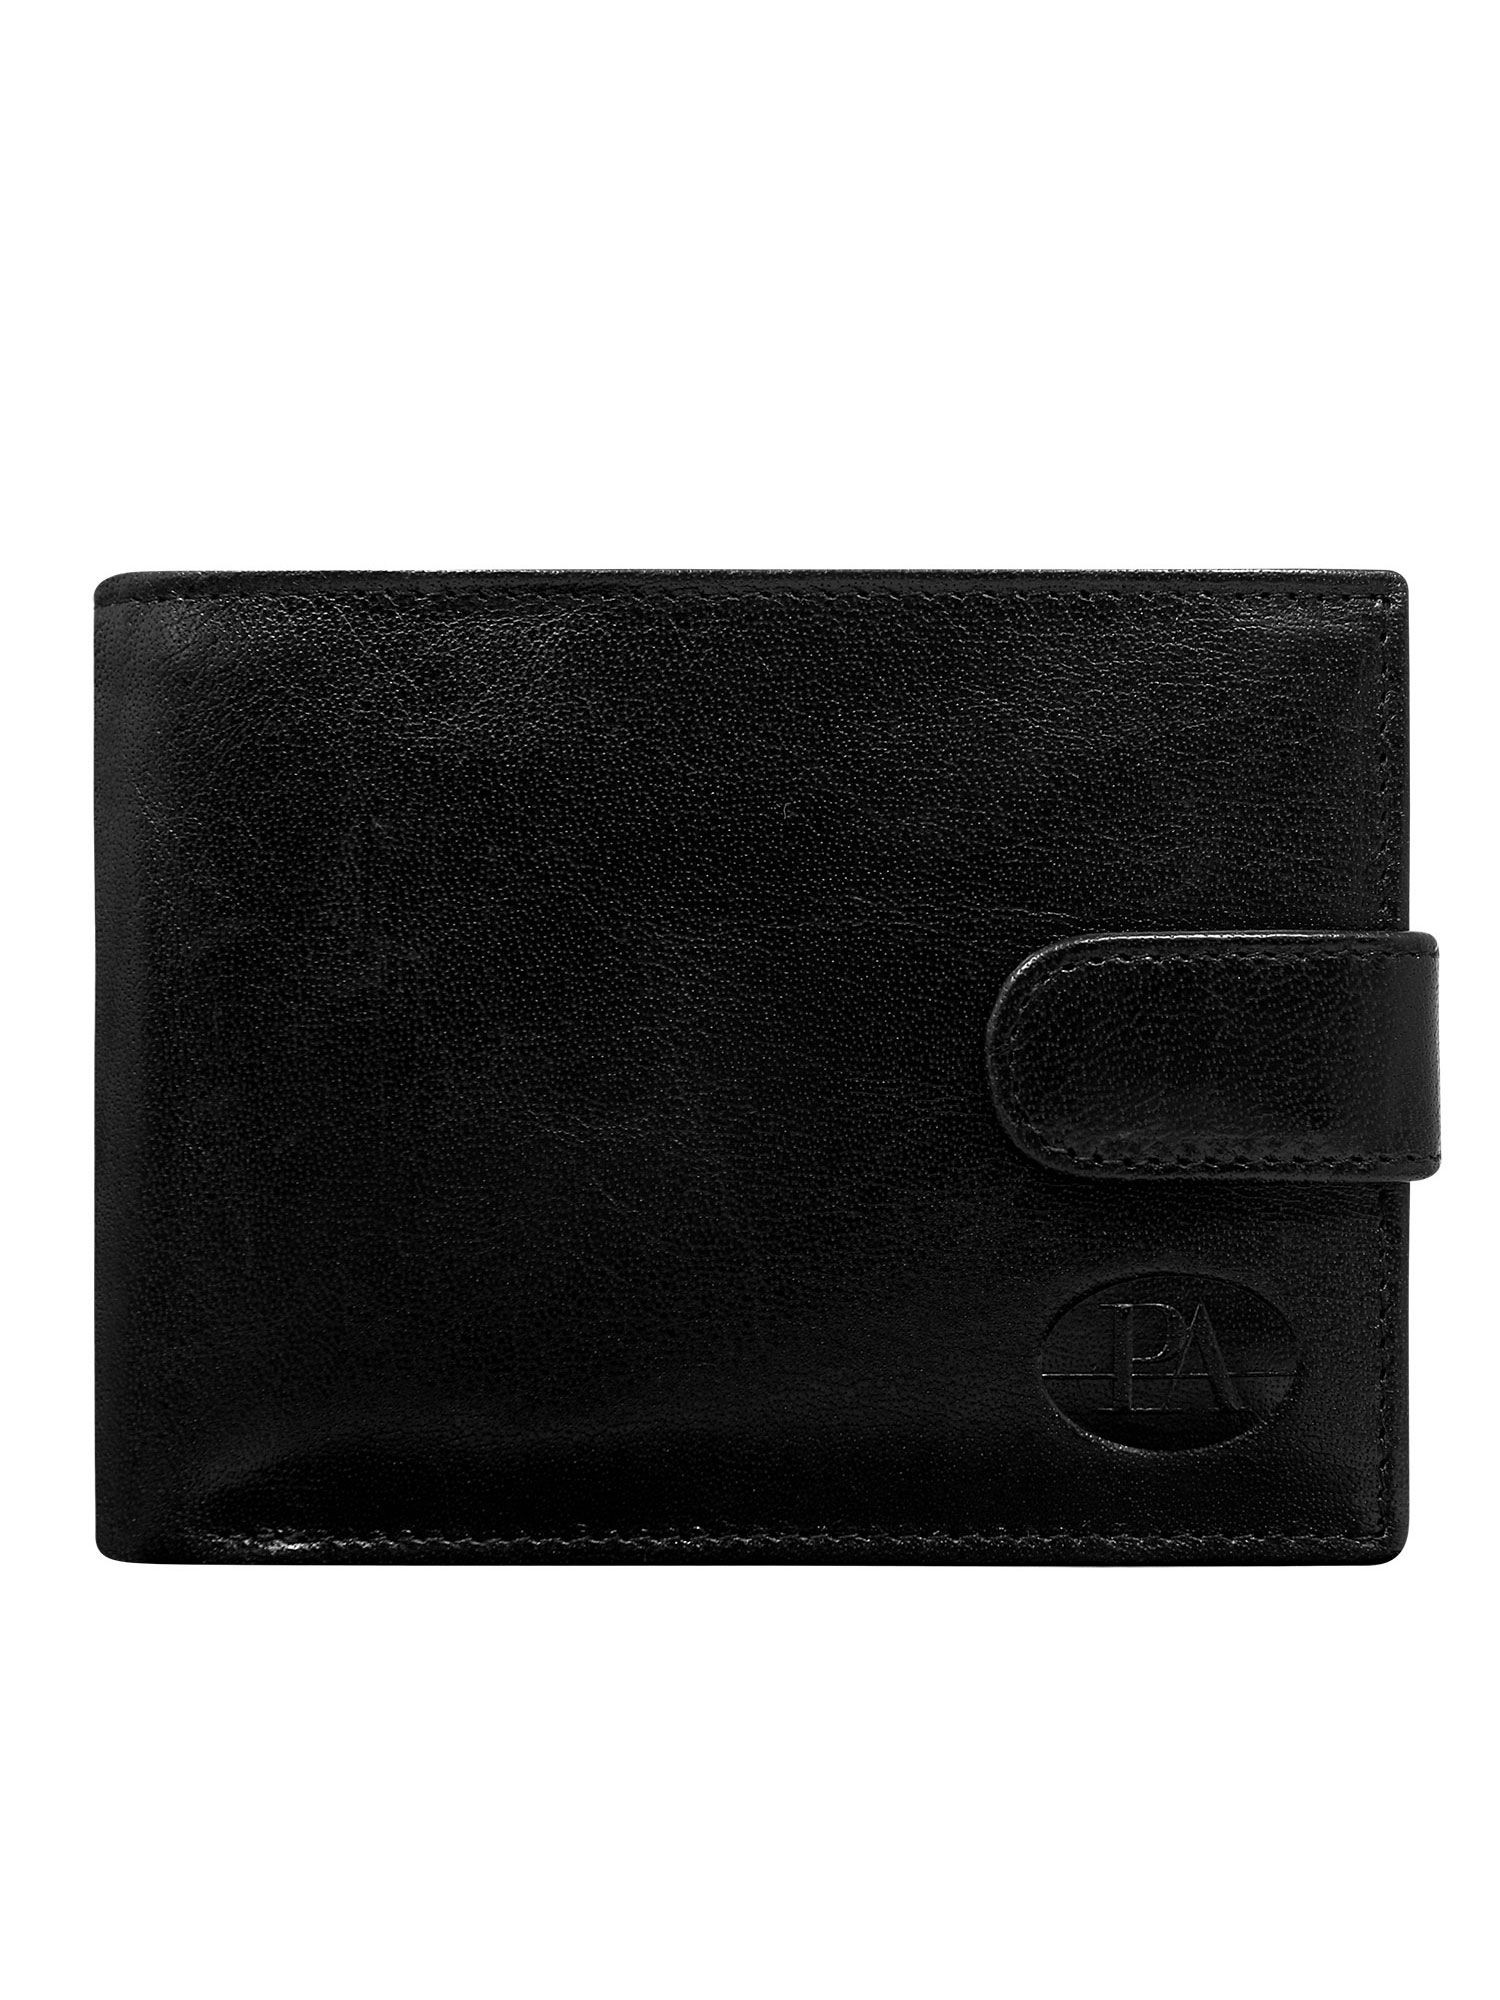 Peněženka CE PR PW černá jedna velikost model 14833841 - FPrice